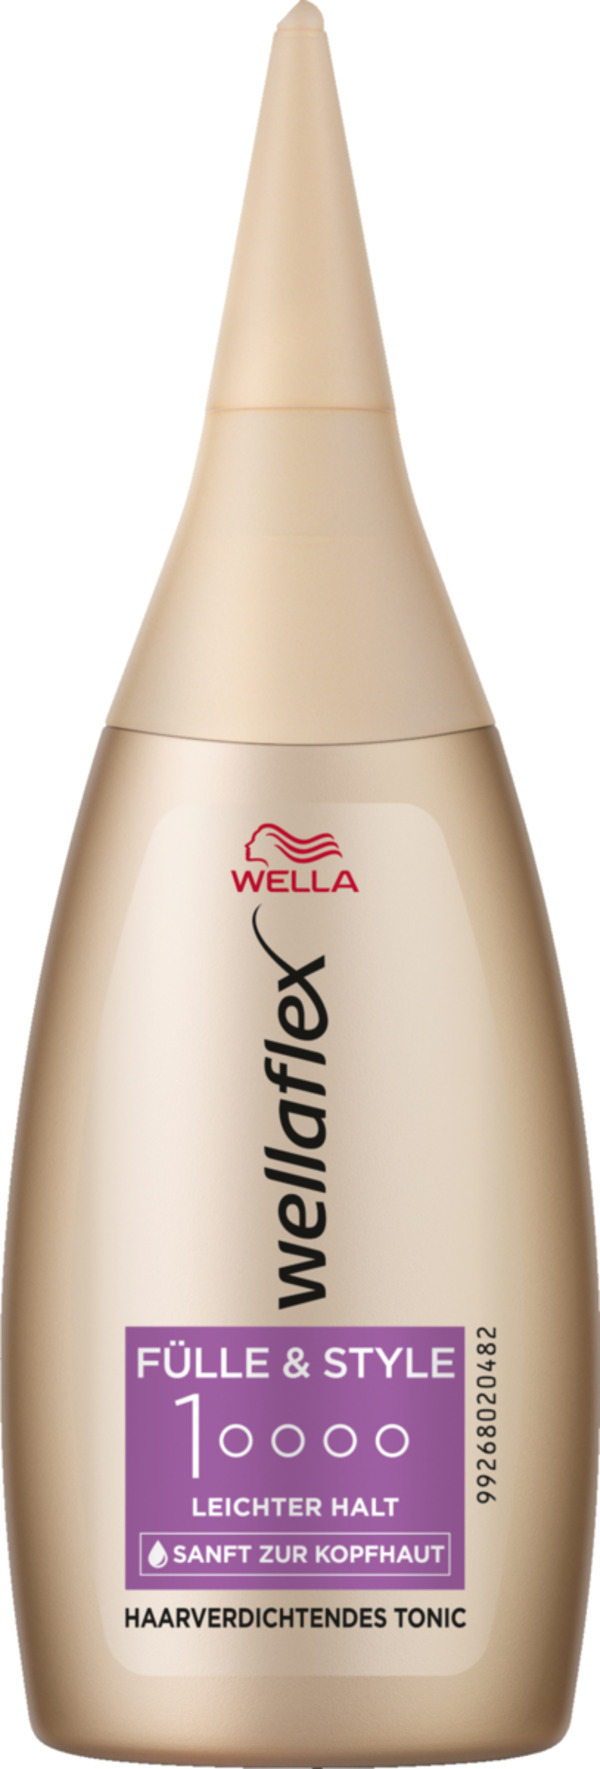 Bild 1 von Wella Wellaflex Fülle & Style Haarverdichtendes Tonic